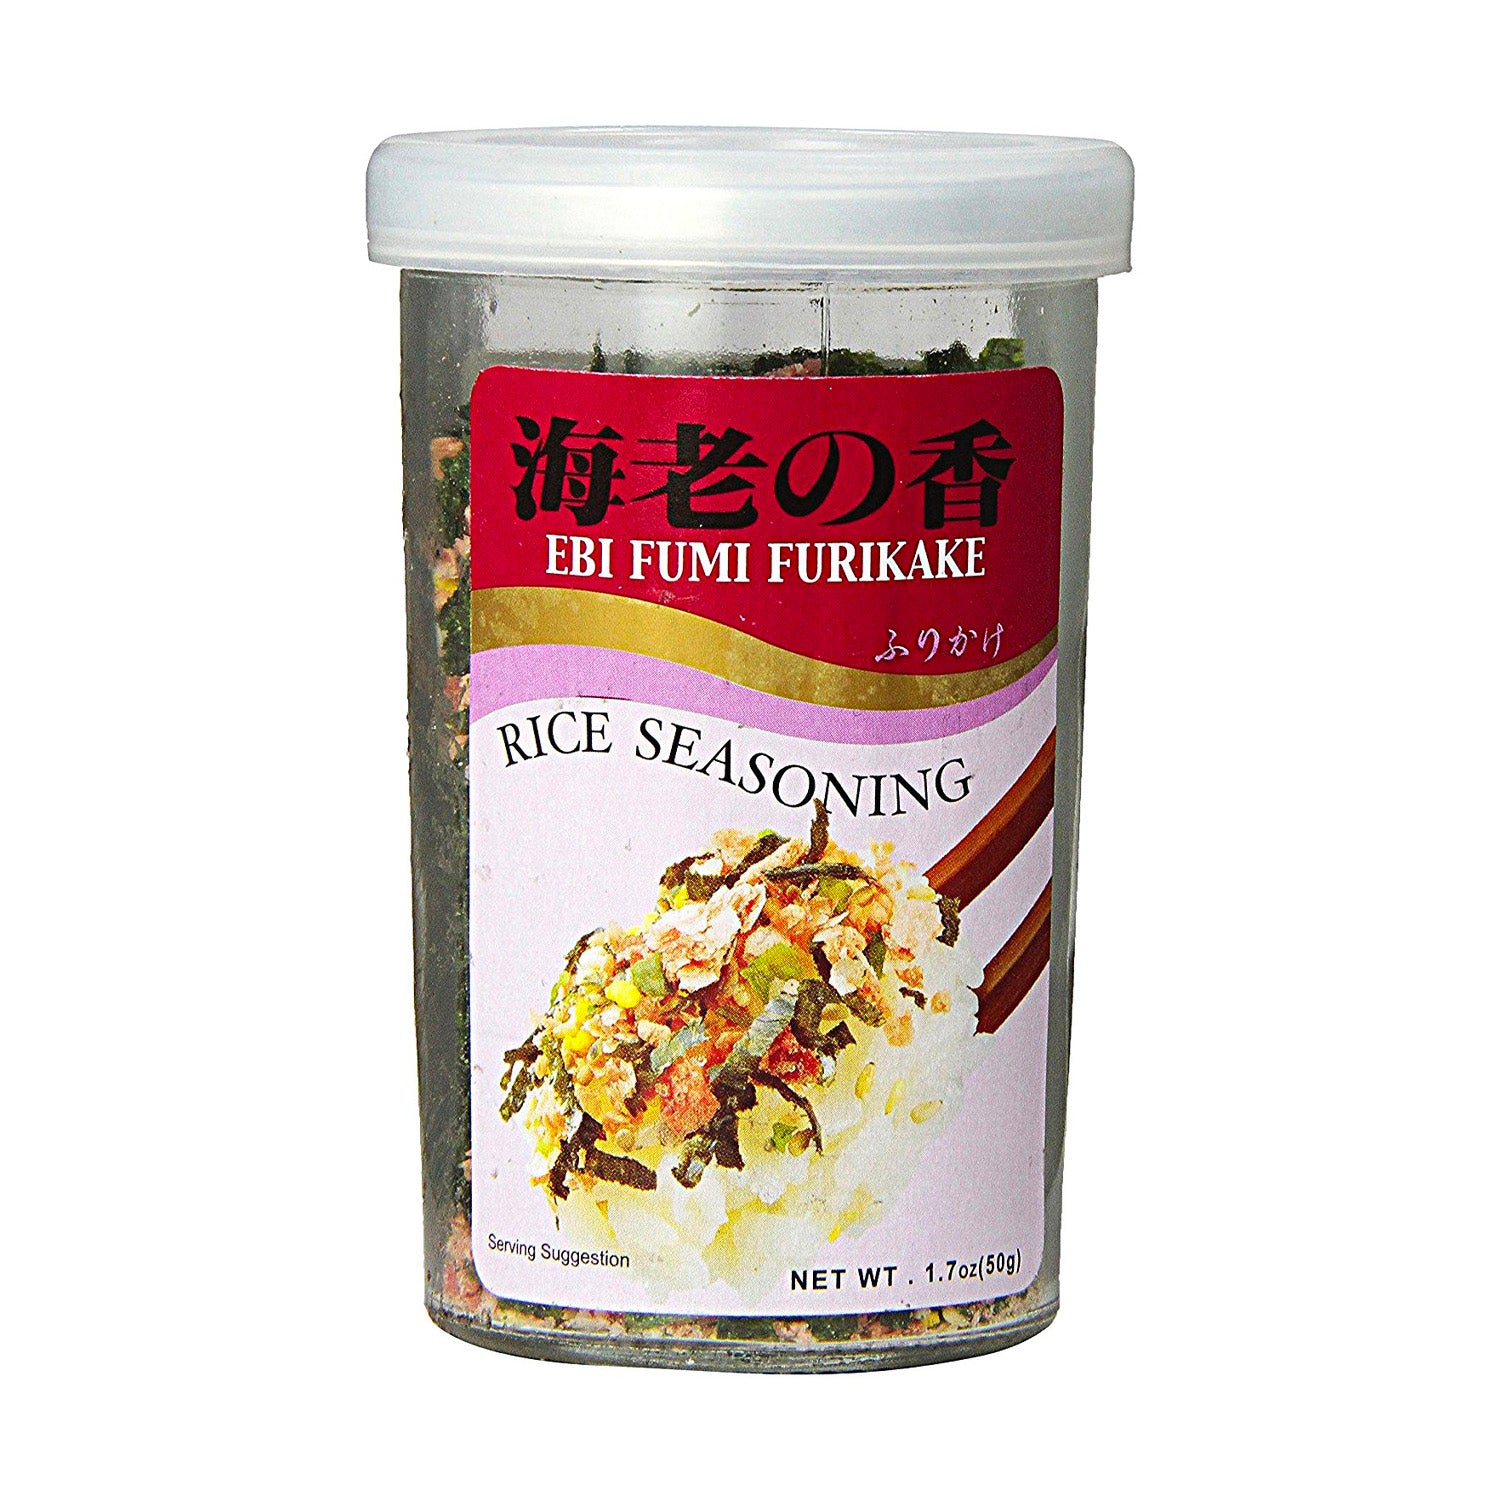 EBI Fumi Furikake Rice Seasoning, Project Ramen